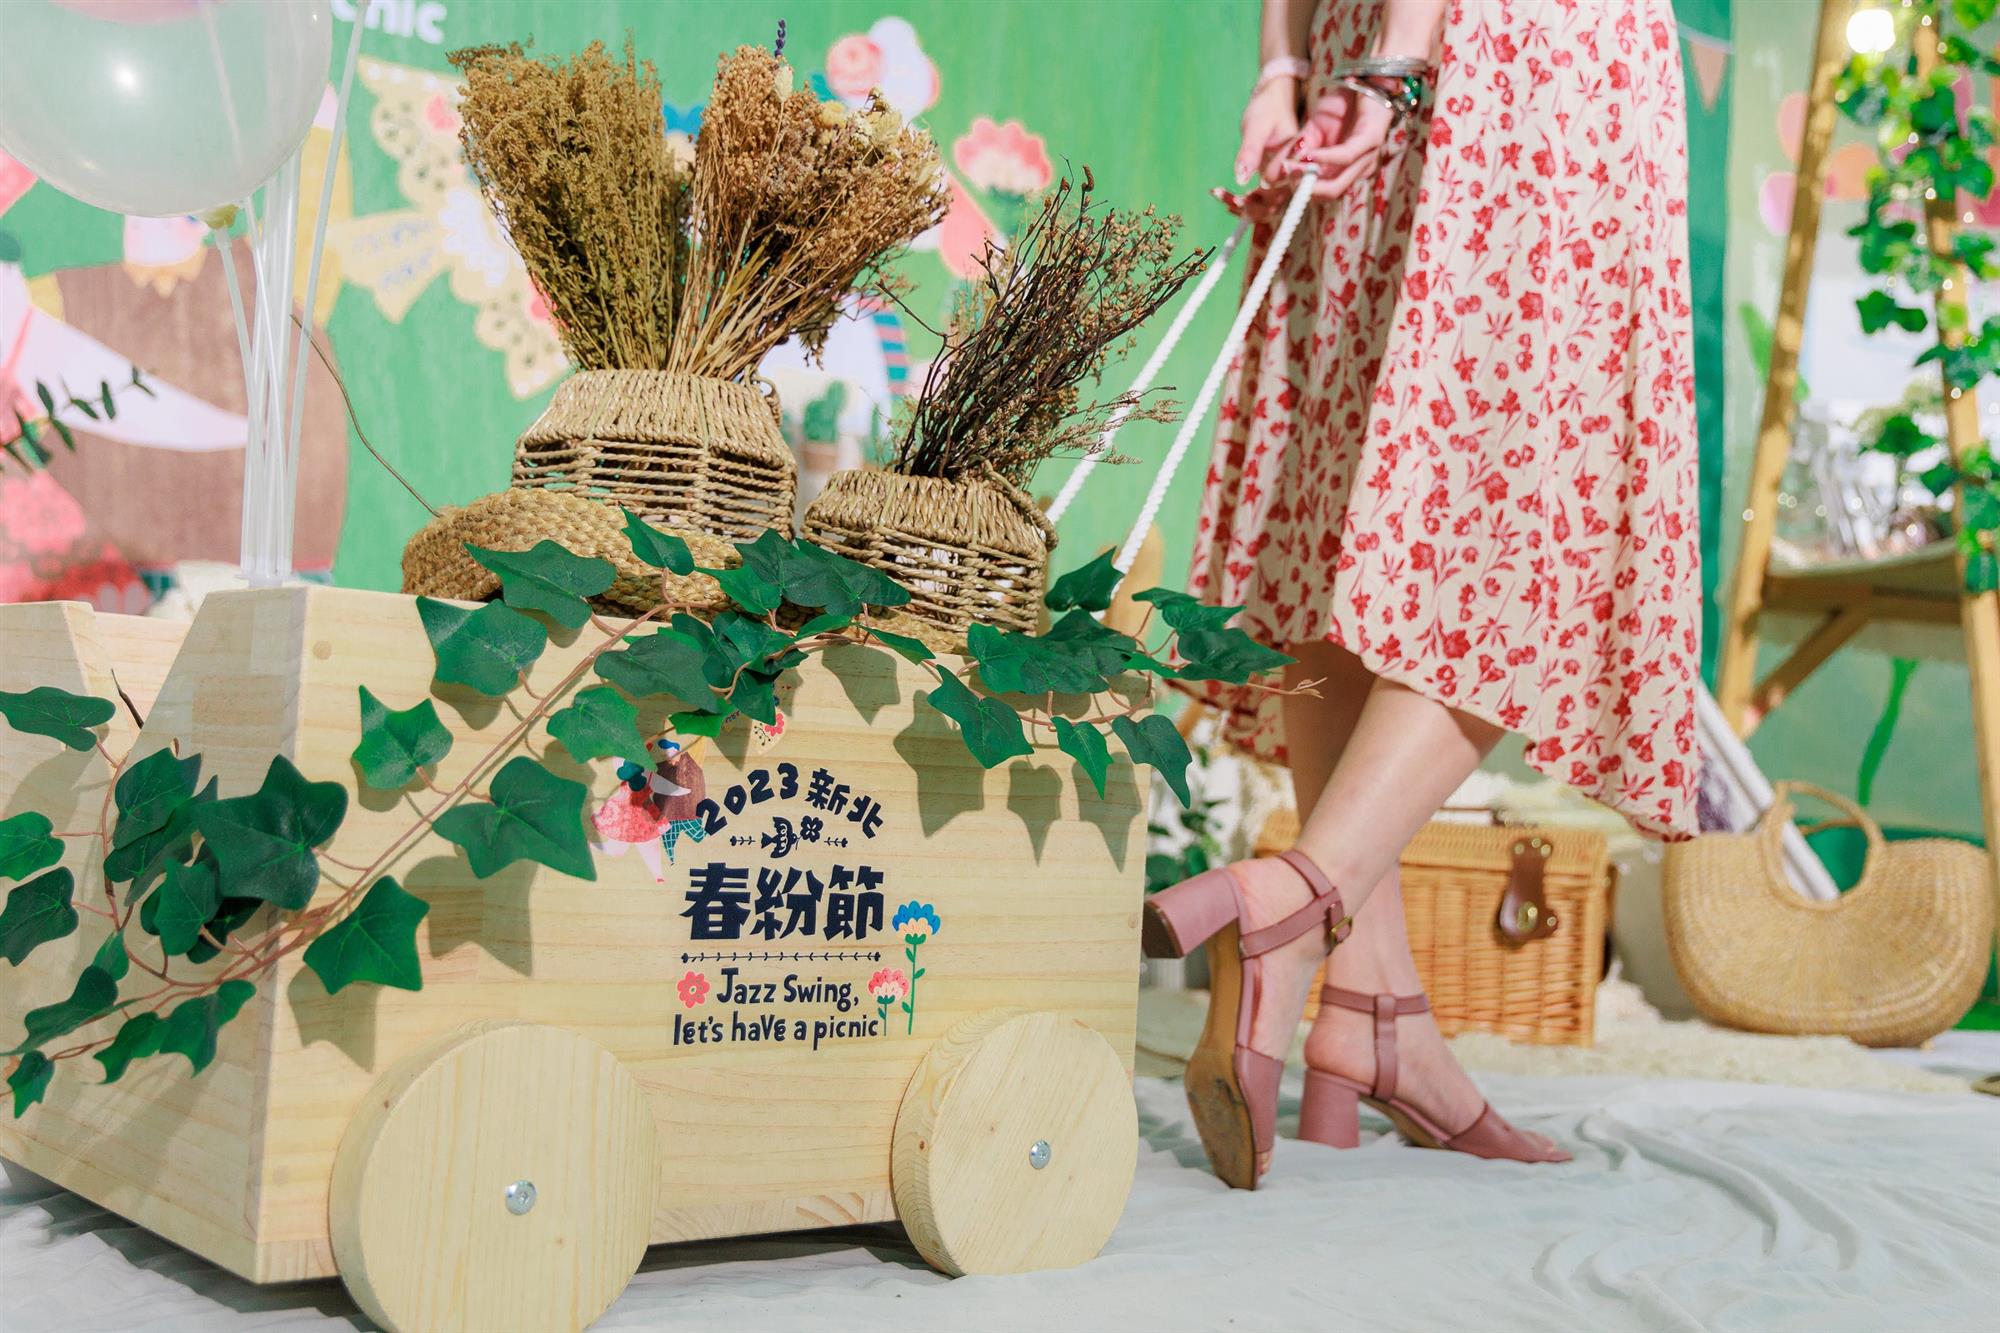 參與春神選拔活動即有機會獲得百貨商品券壹萬元、文青木作小拉車。